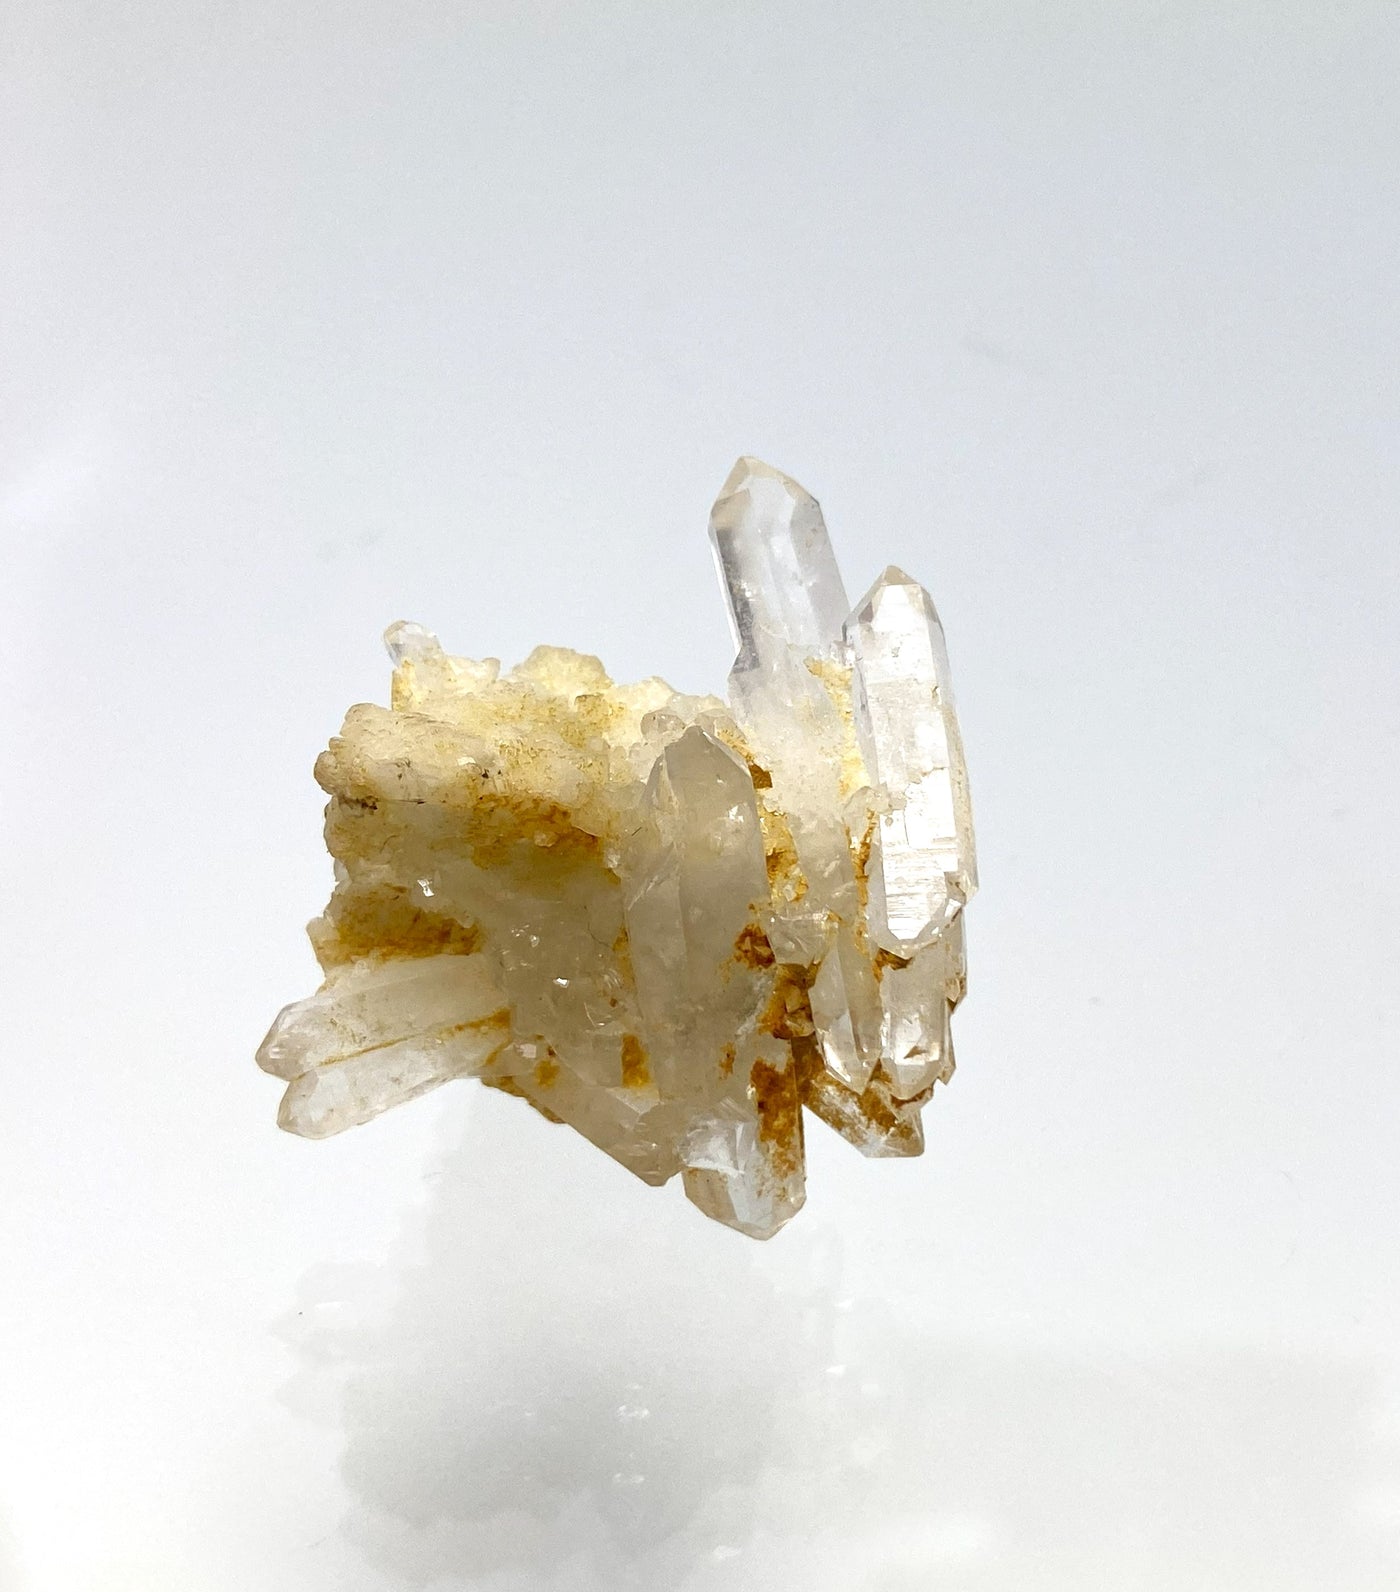 Bergkristall auf Dolomit, Erzberg, Eisenerz, Steiermark, Österreich